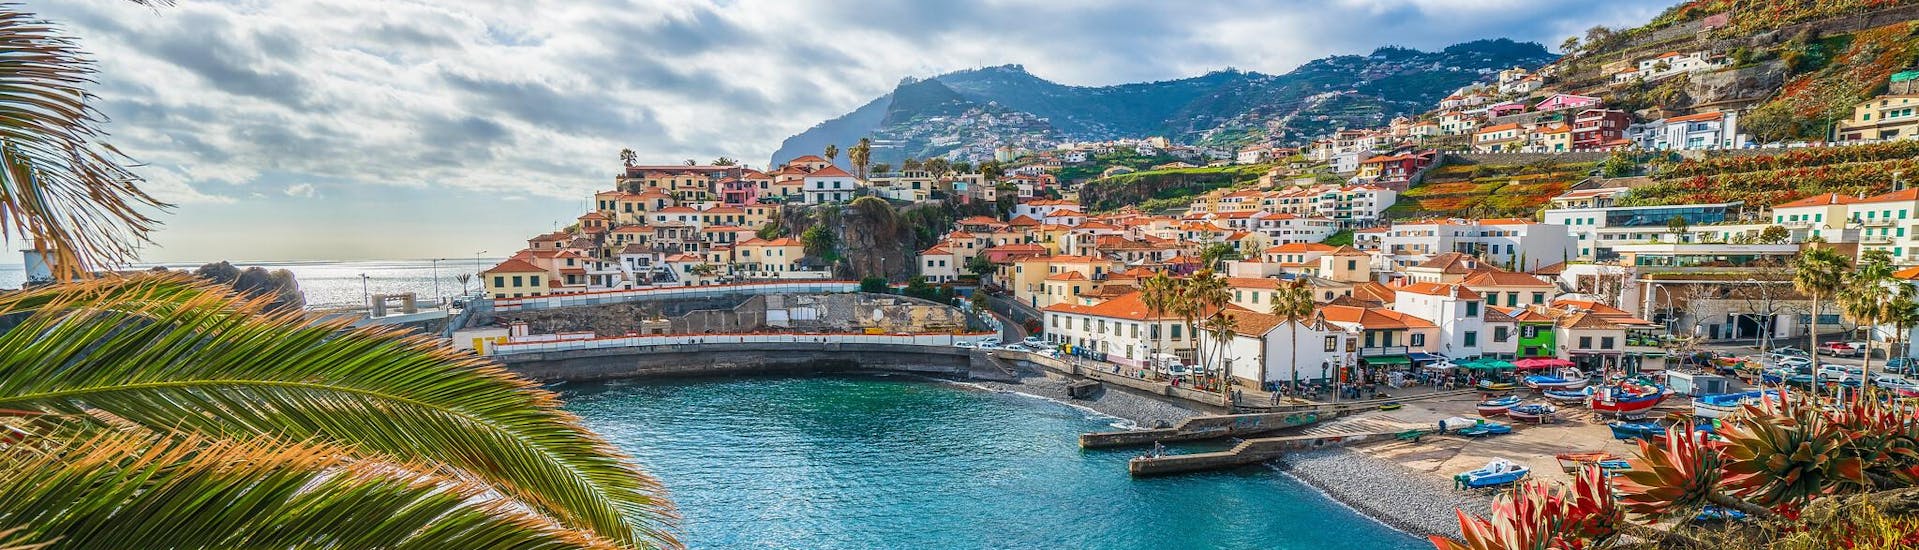 Imagen de la costa y las coloridas casas del pueblo de Funchal